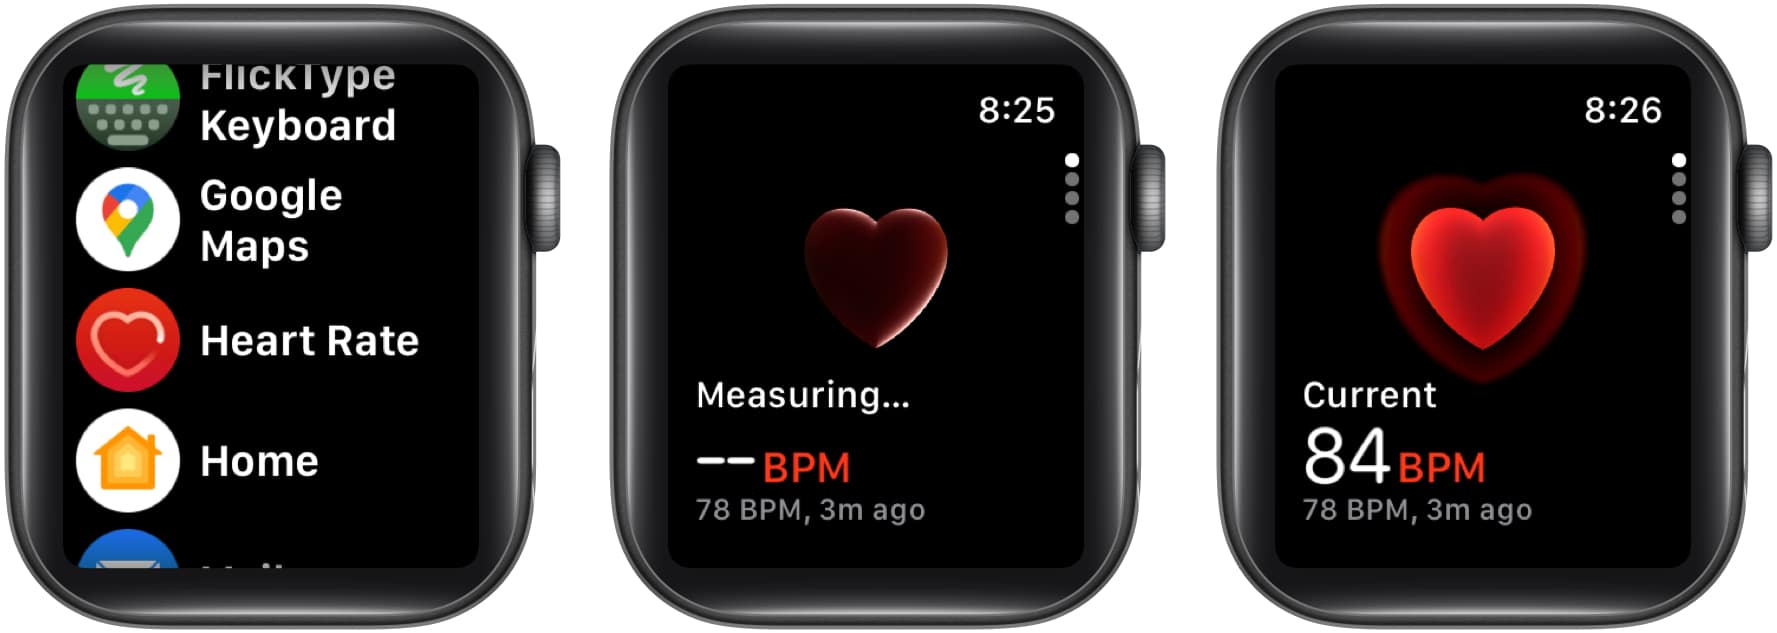 Nyissa meg a Heart Rate alkalmazást, és tekintse meg aktuális pulzusszámát percenkénti ütésekben